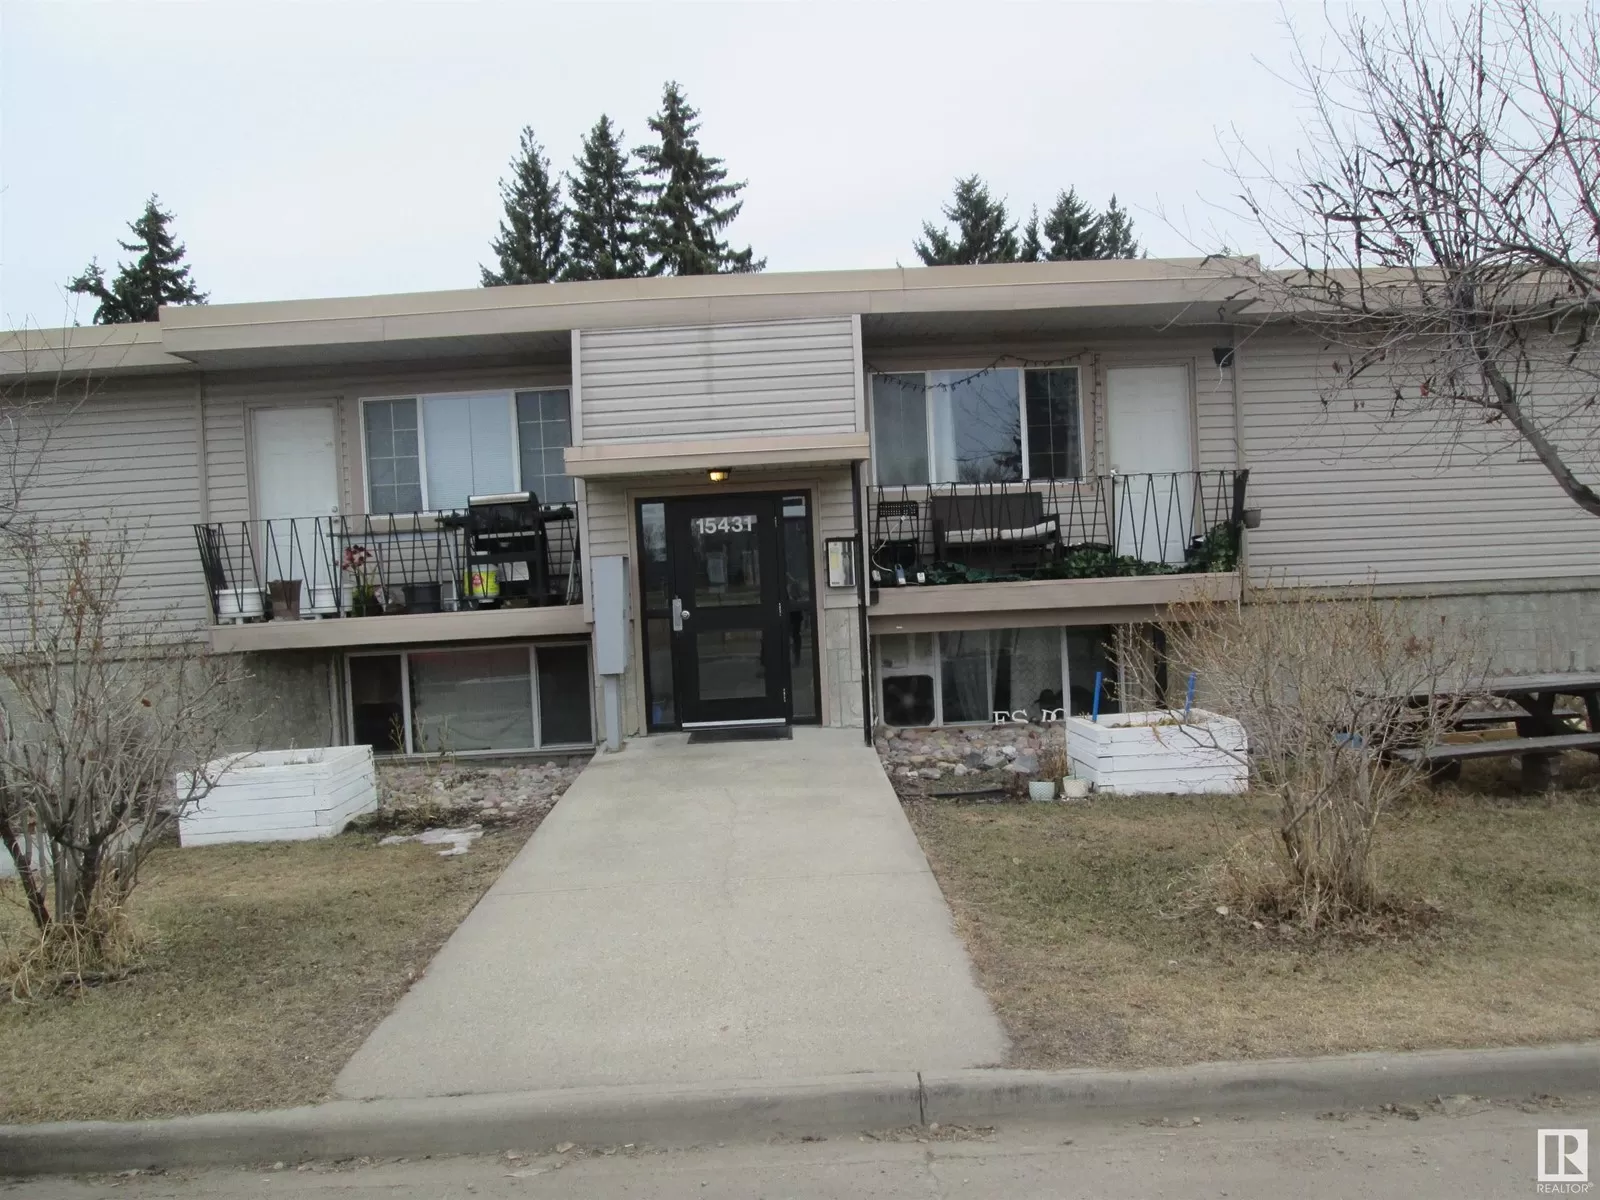 Apartment for rent: #2 15431 93 Av Nw, Edmonton, Alberta T5R 5H4